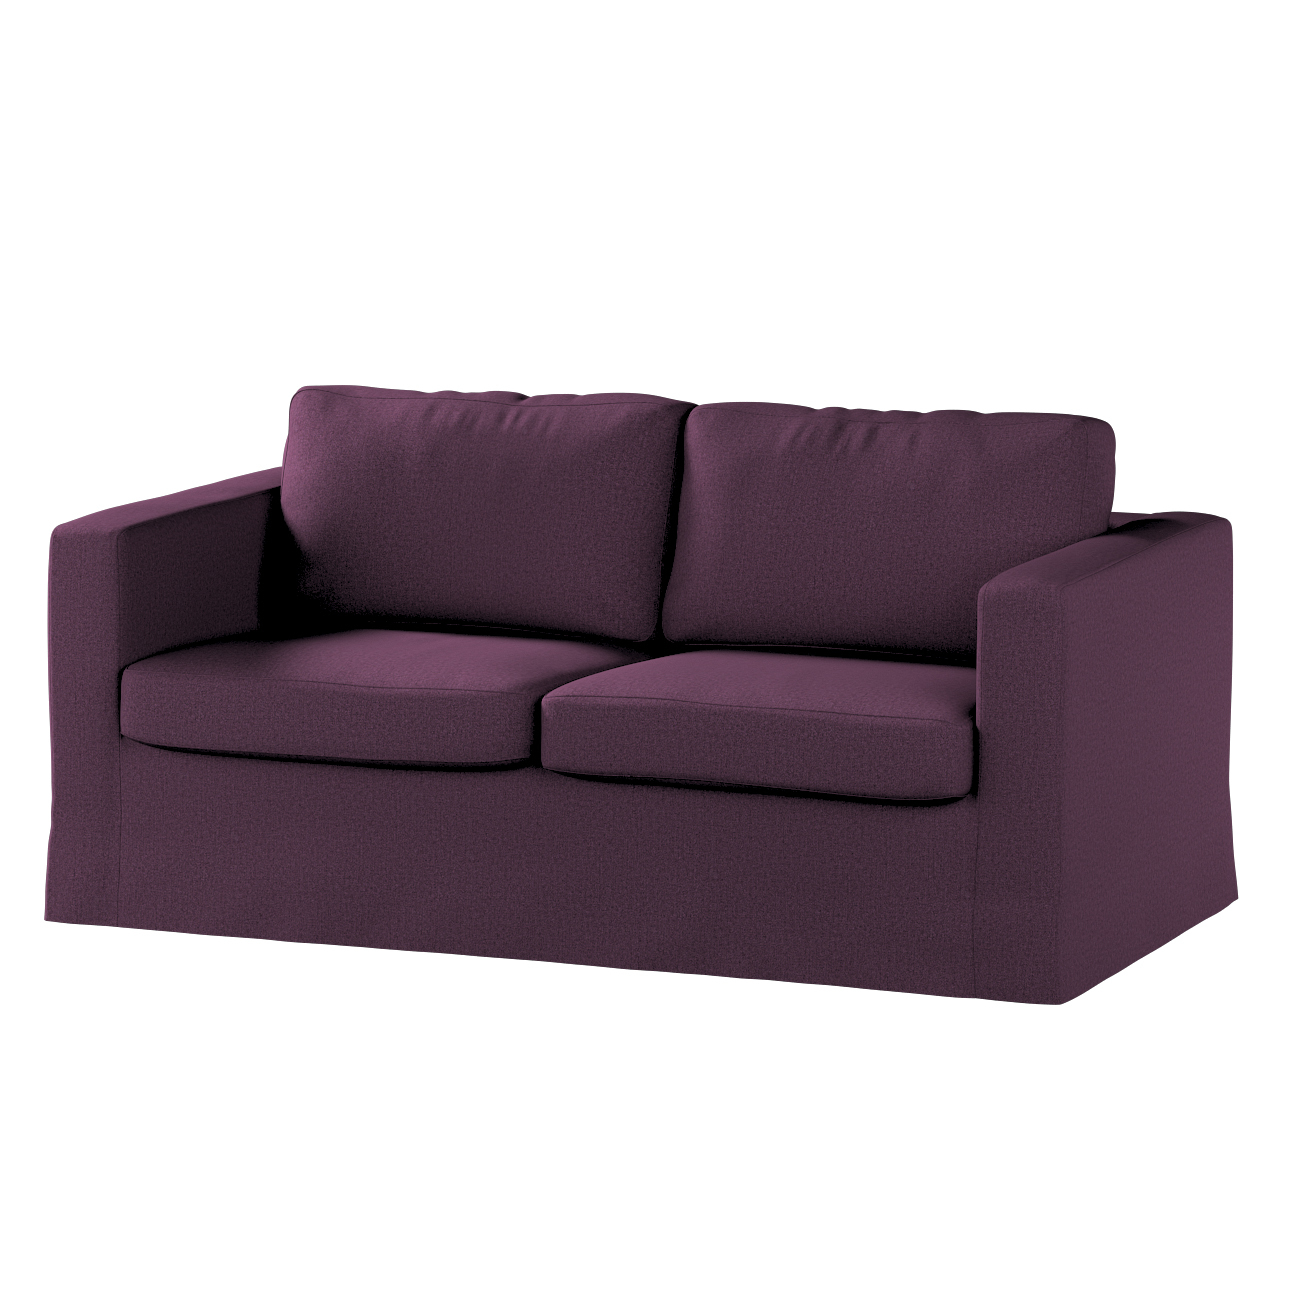 Bezug für Karlstad 2-Sitzer Sofa nicht ausklappbar, lang, pflaume, Sofahuss günstig online kaufen